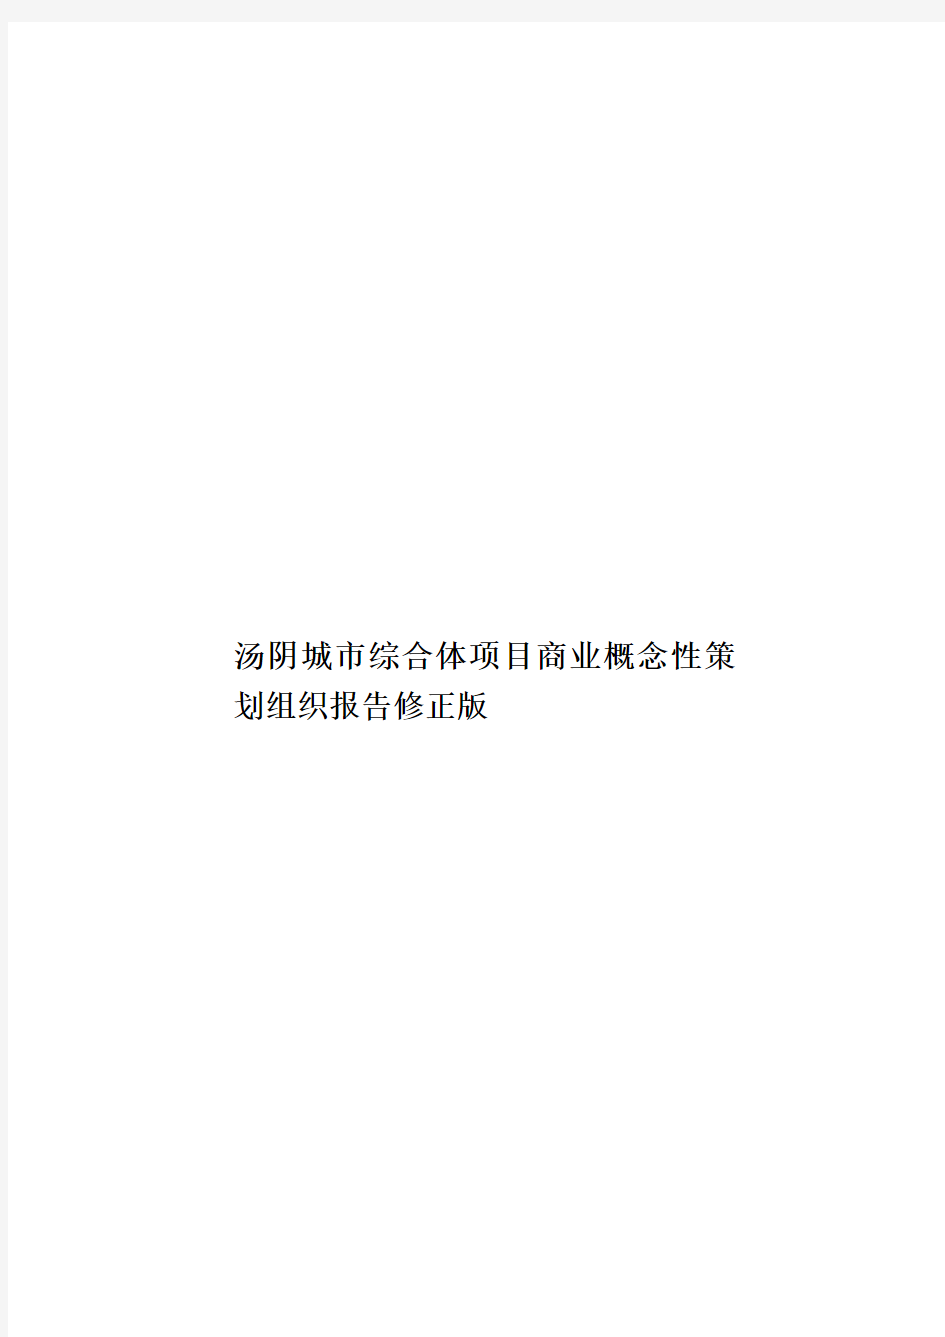 汤阴城市综合体项目商业概念性策划组织报告修正版样本